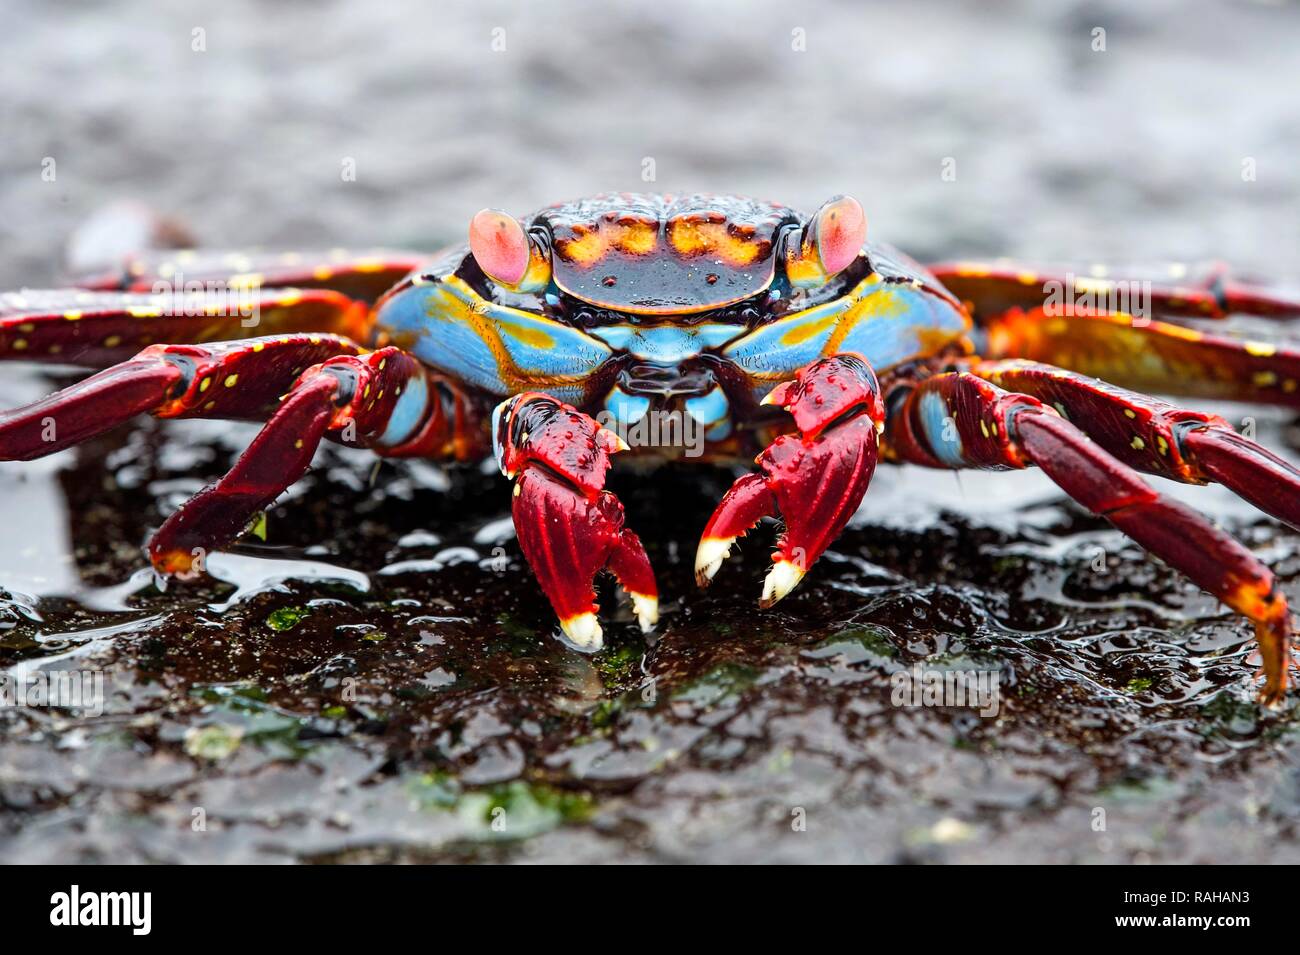 Le red rock crab (Grapsus grapsus) sur l'île Isabela, rock, îles Galapagos, Equateur Banque D'Images